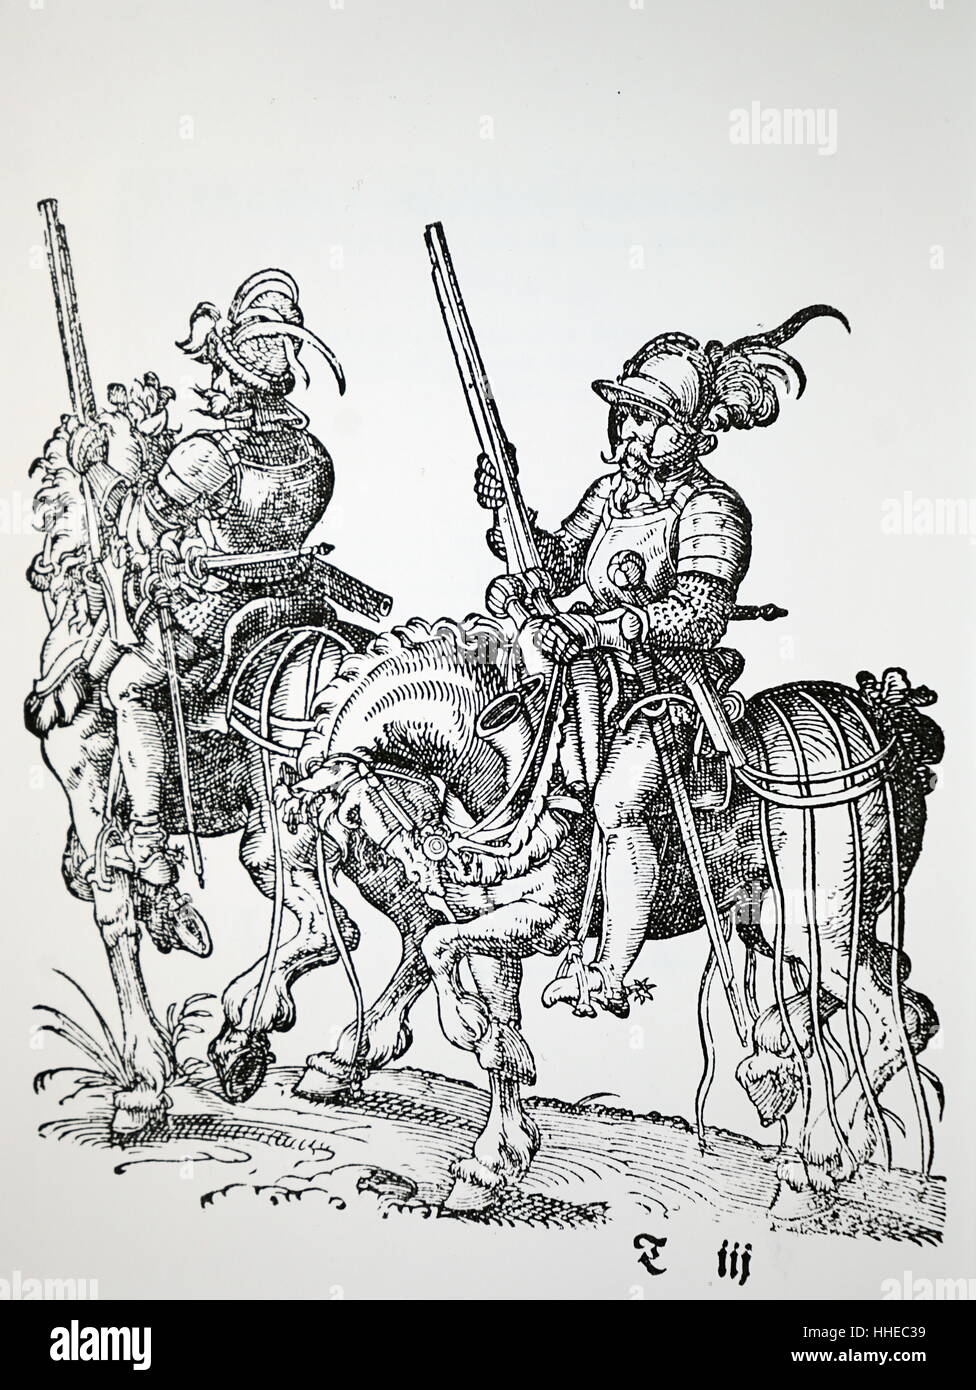 Les cavaliers de mousquets, de pistolets et d'épées. Gravure sur bois par Jost Amman publié 1599 Banque D'Images